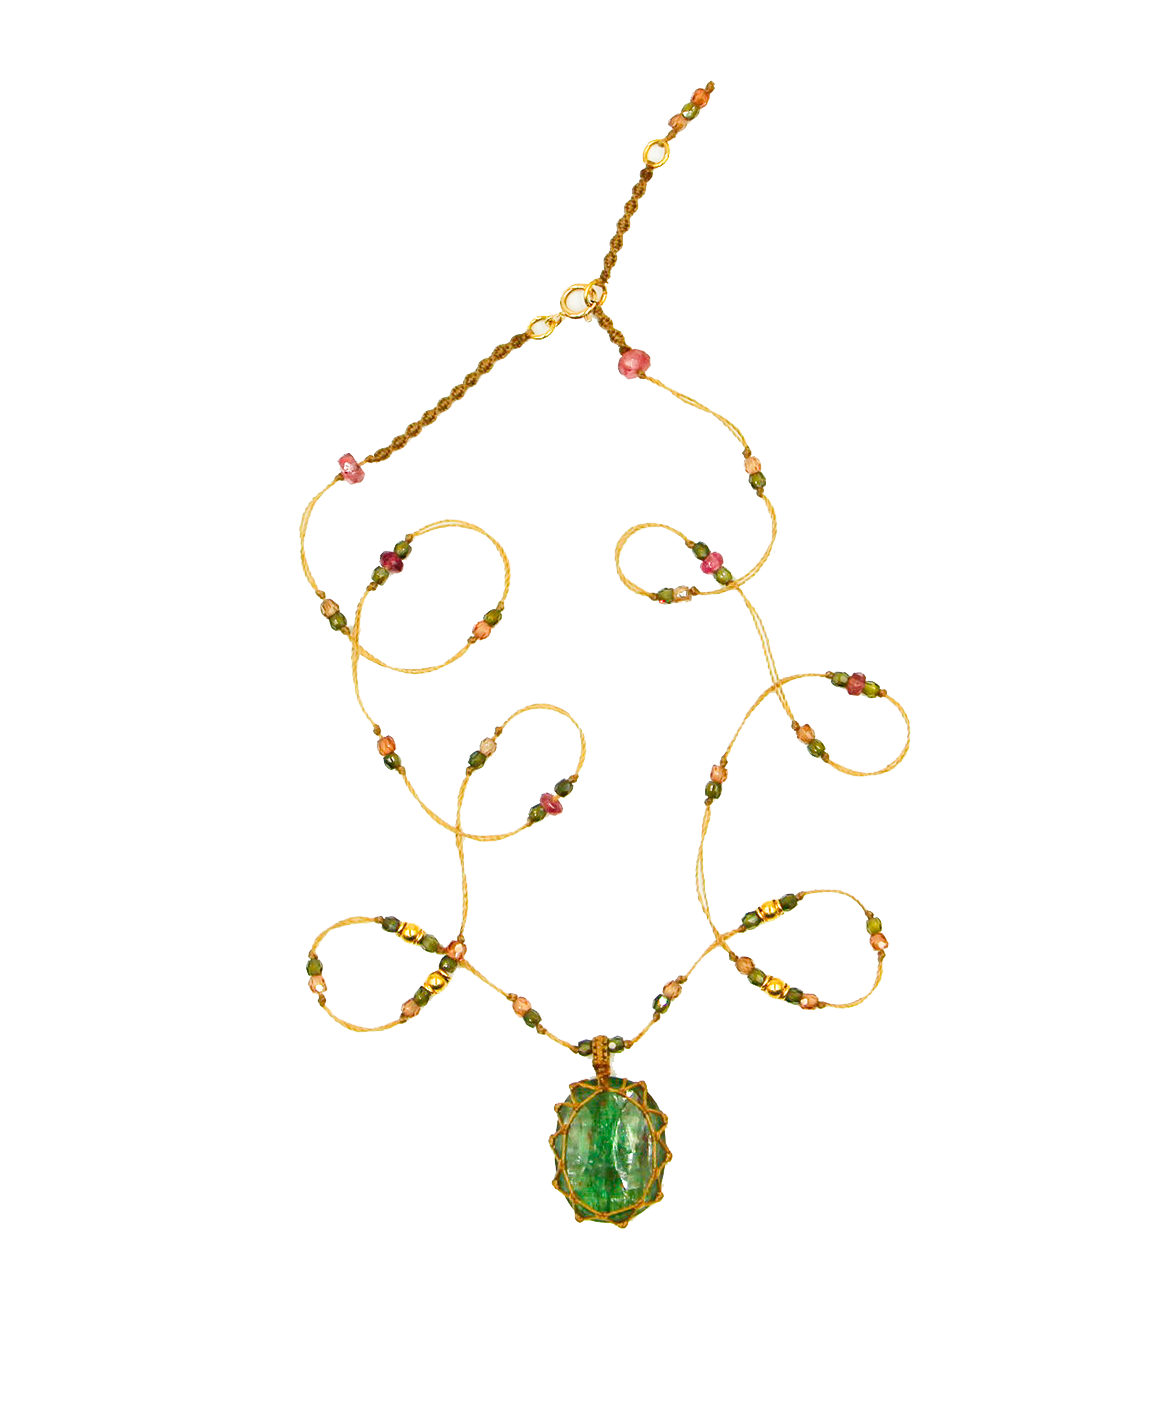 So Precious Short Tibetan Necklace - Emerald Kyanite - Mix Pink Tourmaline - Beige Thread